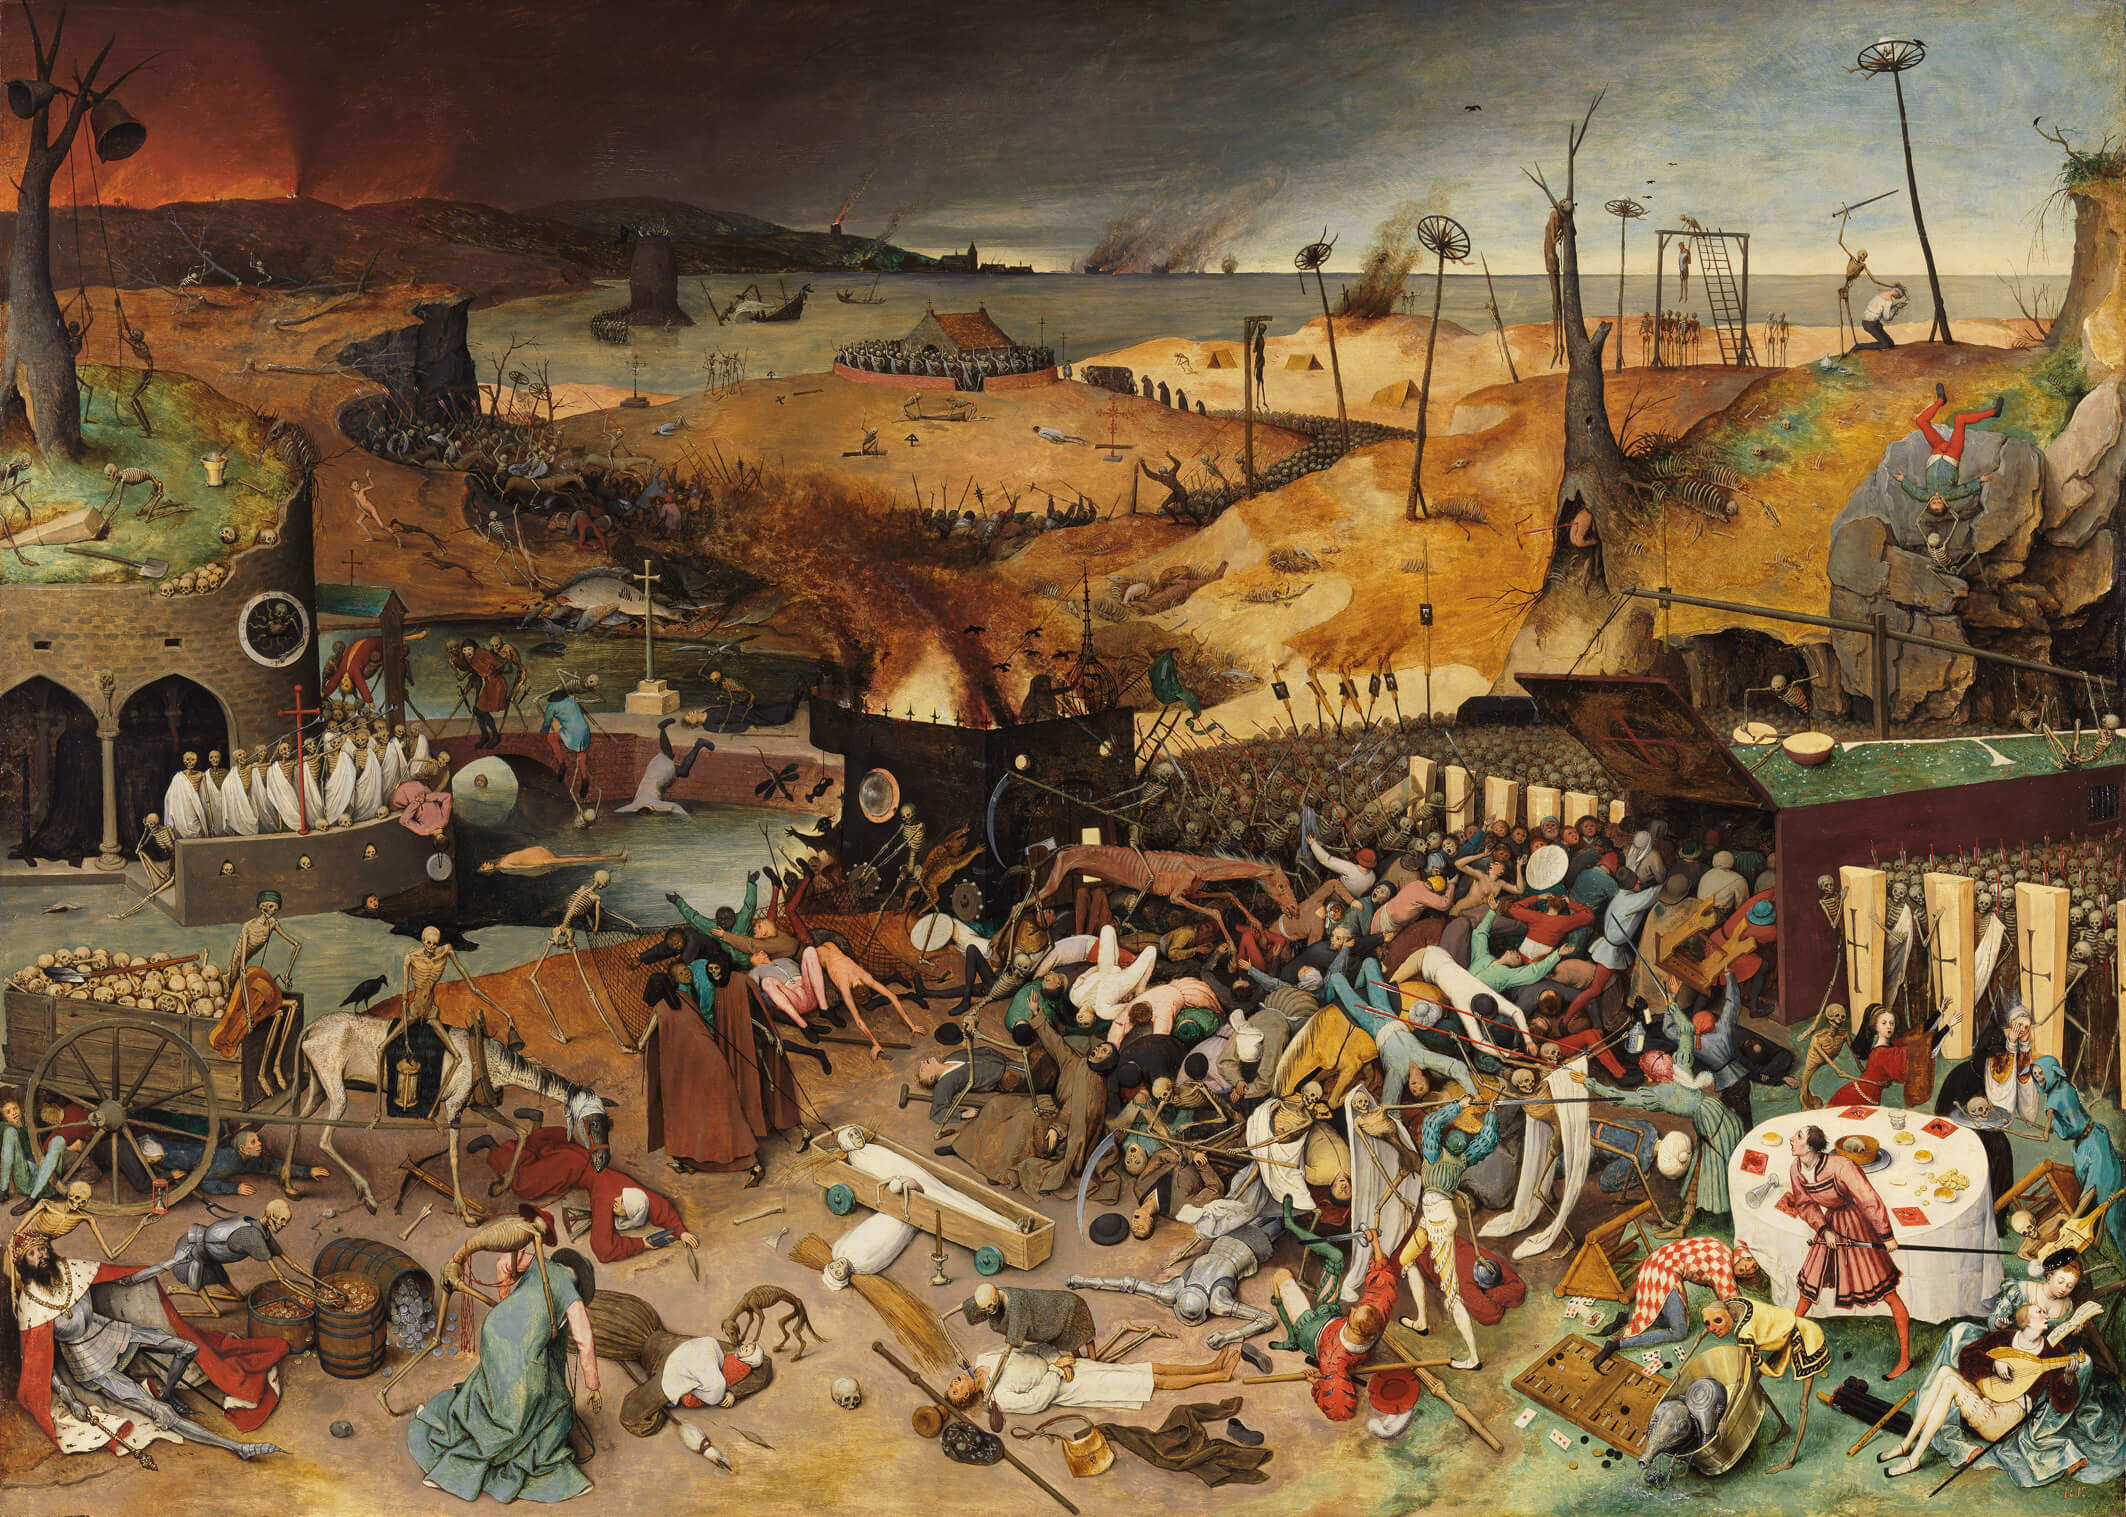 Wijdeven-Het schilderij 'De triomf van de dood' van Pieter Bruegel de Oude toont ook aspecten van het dagelijkse leven in de 16e eeuw waarin de gevolgen van een pestplaag nog altijd zichtbaar waren en het risico op een nieuwe plaag werd gevreesd.